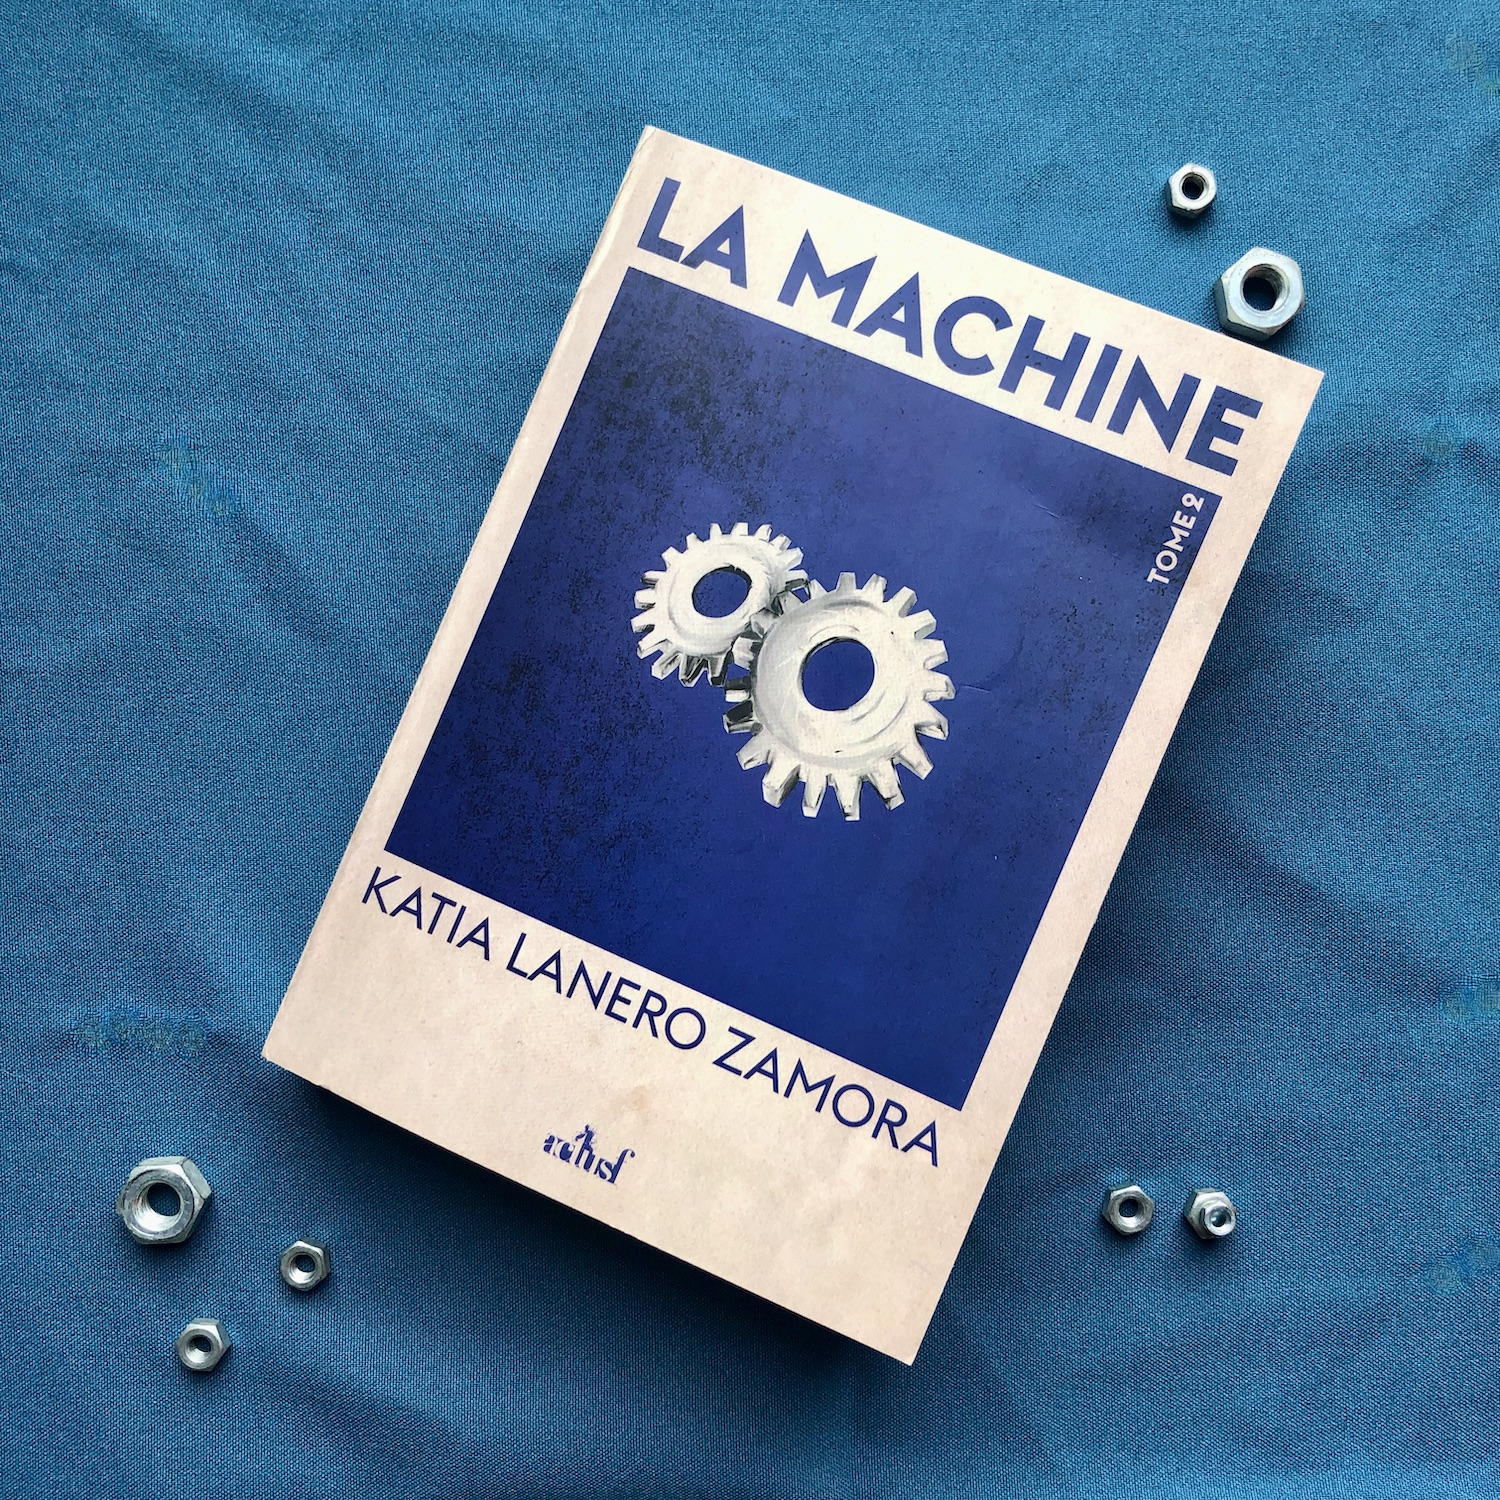 Le livre La machine, tome 2 de Katia Lanero Zamora chez ActuSf posé sur un tissu bleu sur lequel on voit des boulons. La couverture du livre montre un encadré bleu nuit sur fond beige. Dans ce cadre, deux rouages beiges sont illustrés au centre.